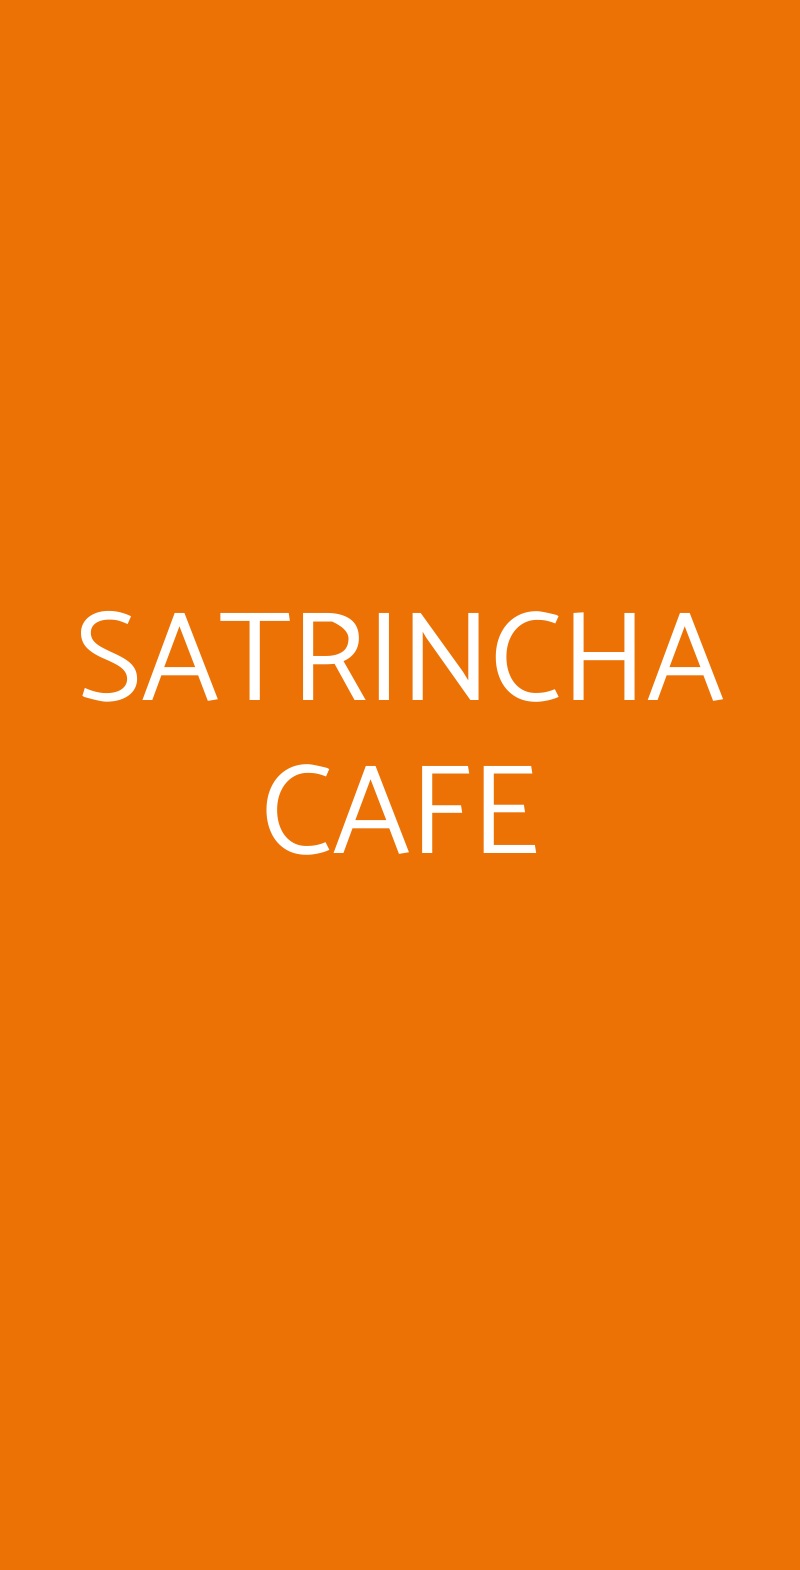 SATRINCHA CAFE Peschiera Borromeo menù 1 pagina